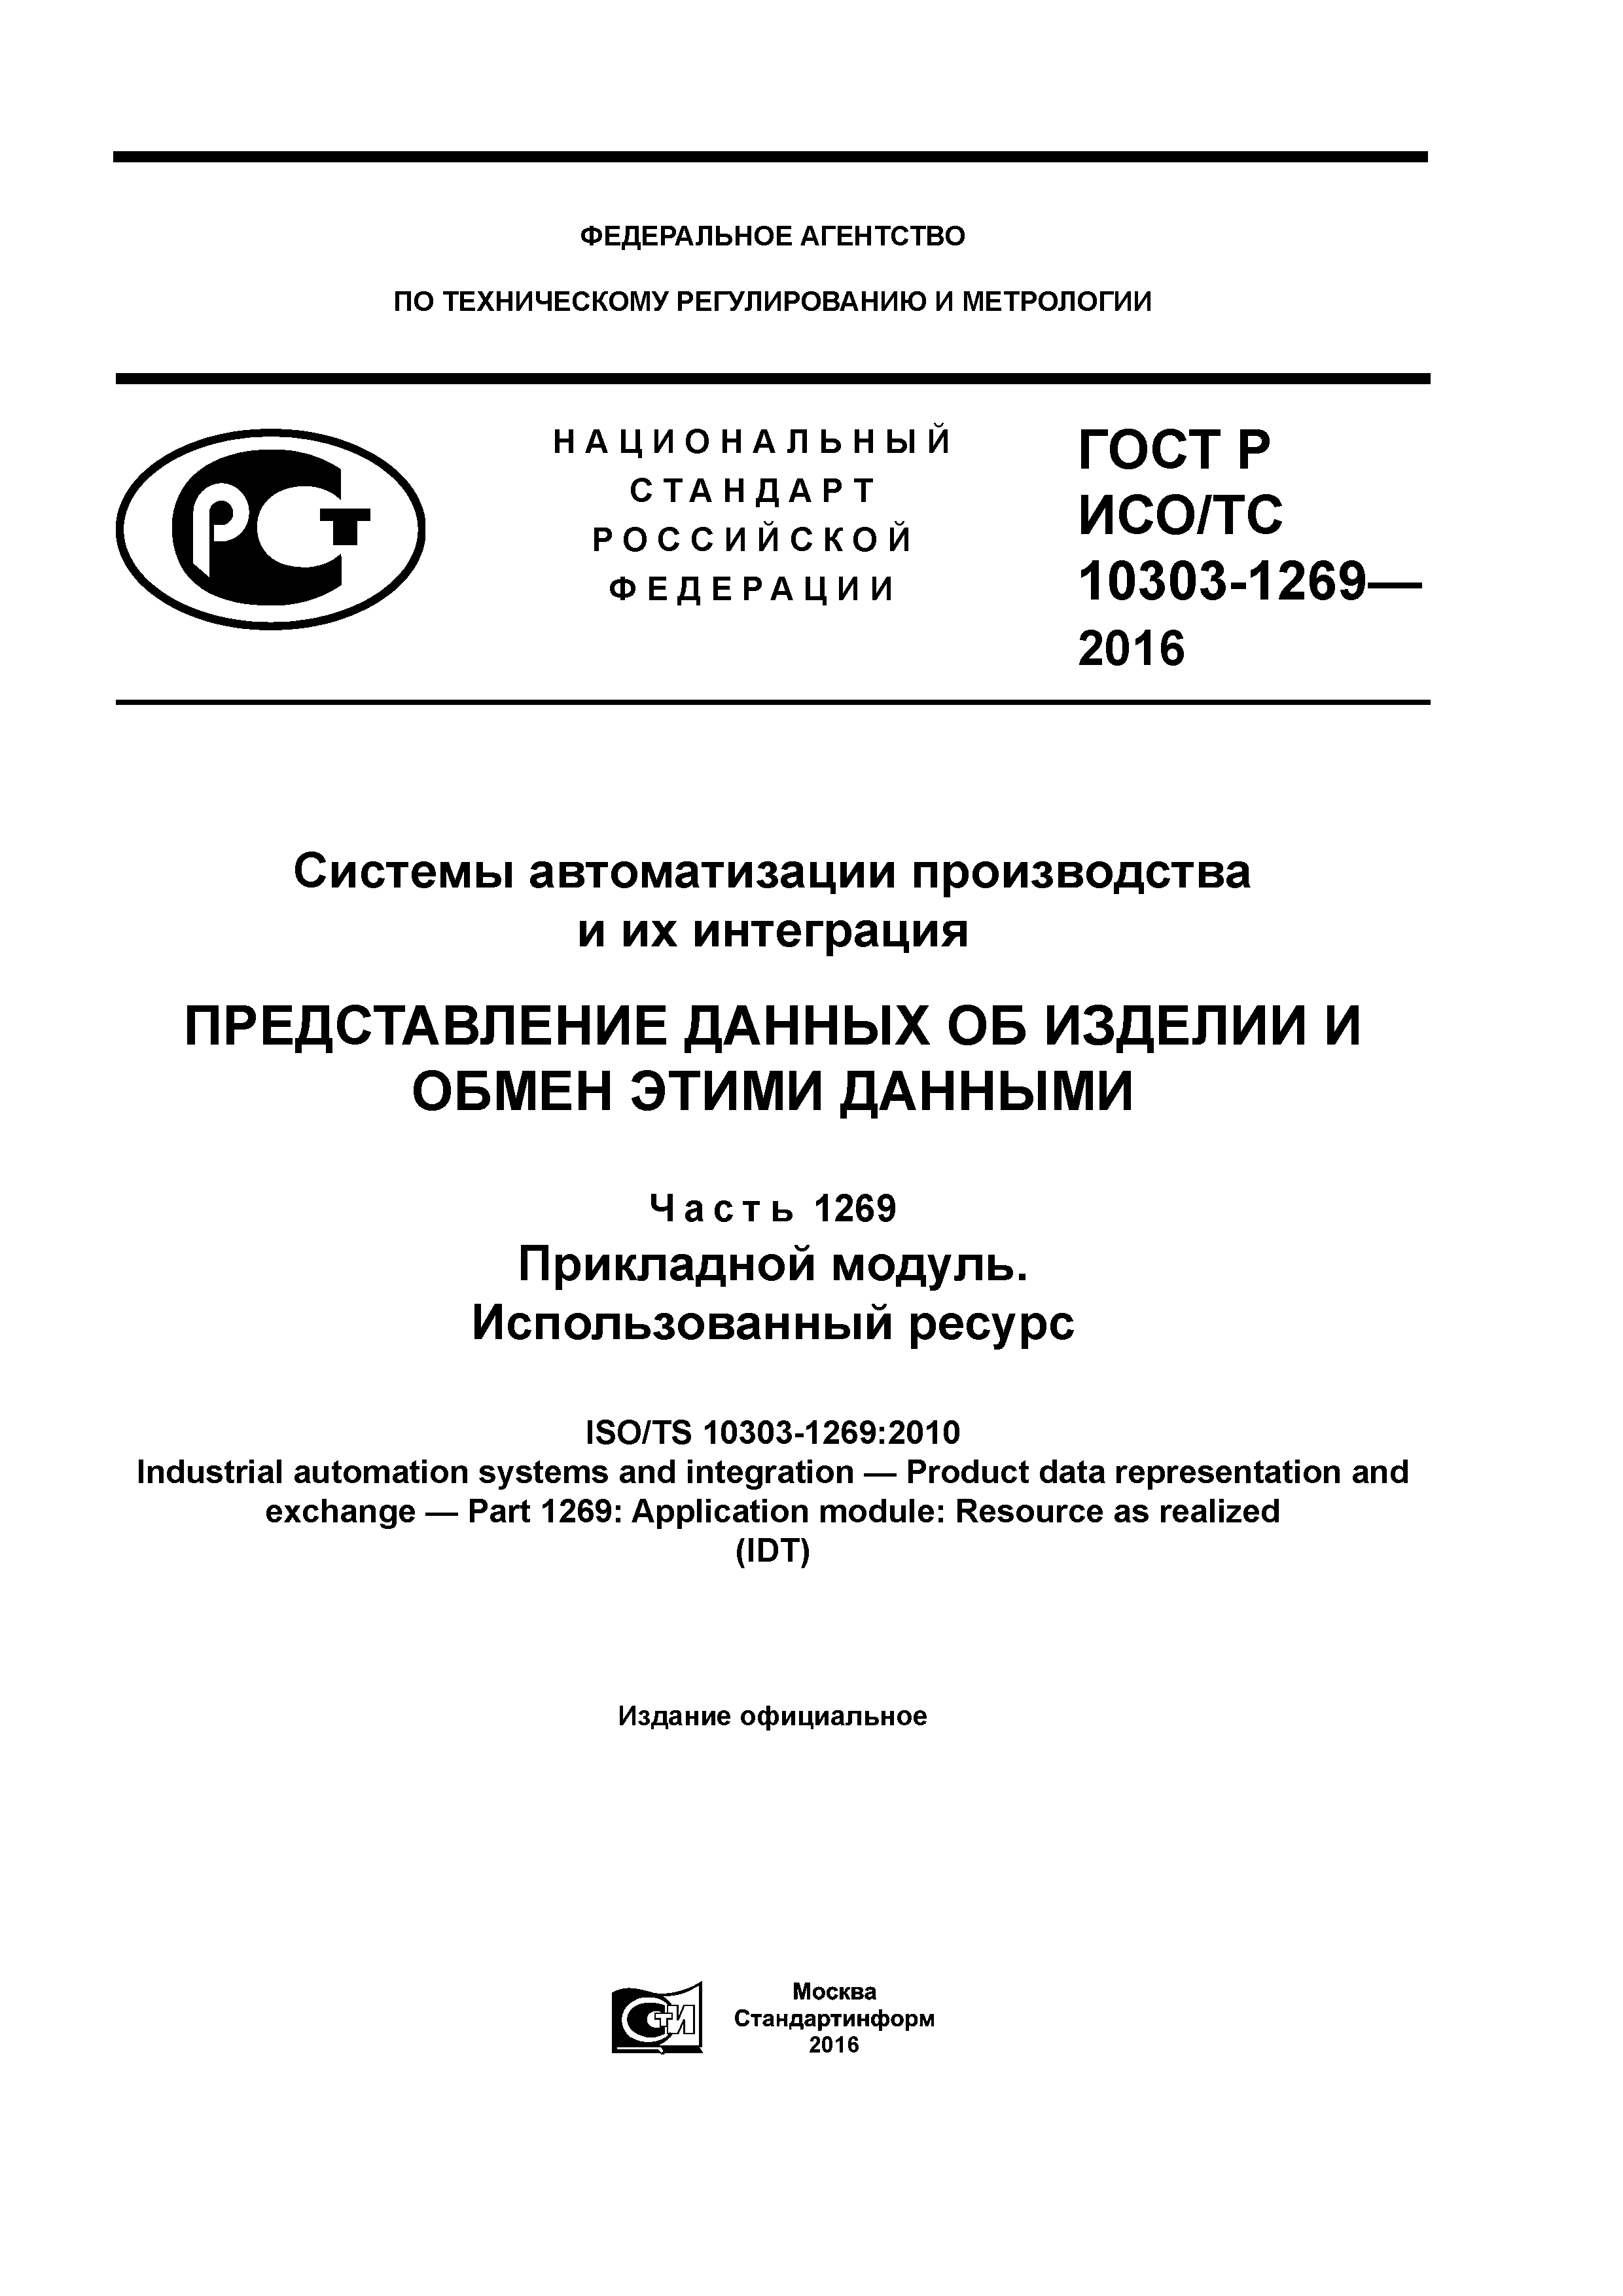 ГОСТ Р ИСО/ТС 10303-1269-2016